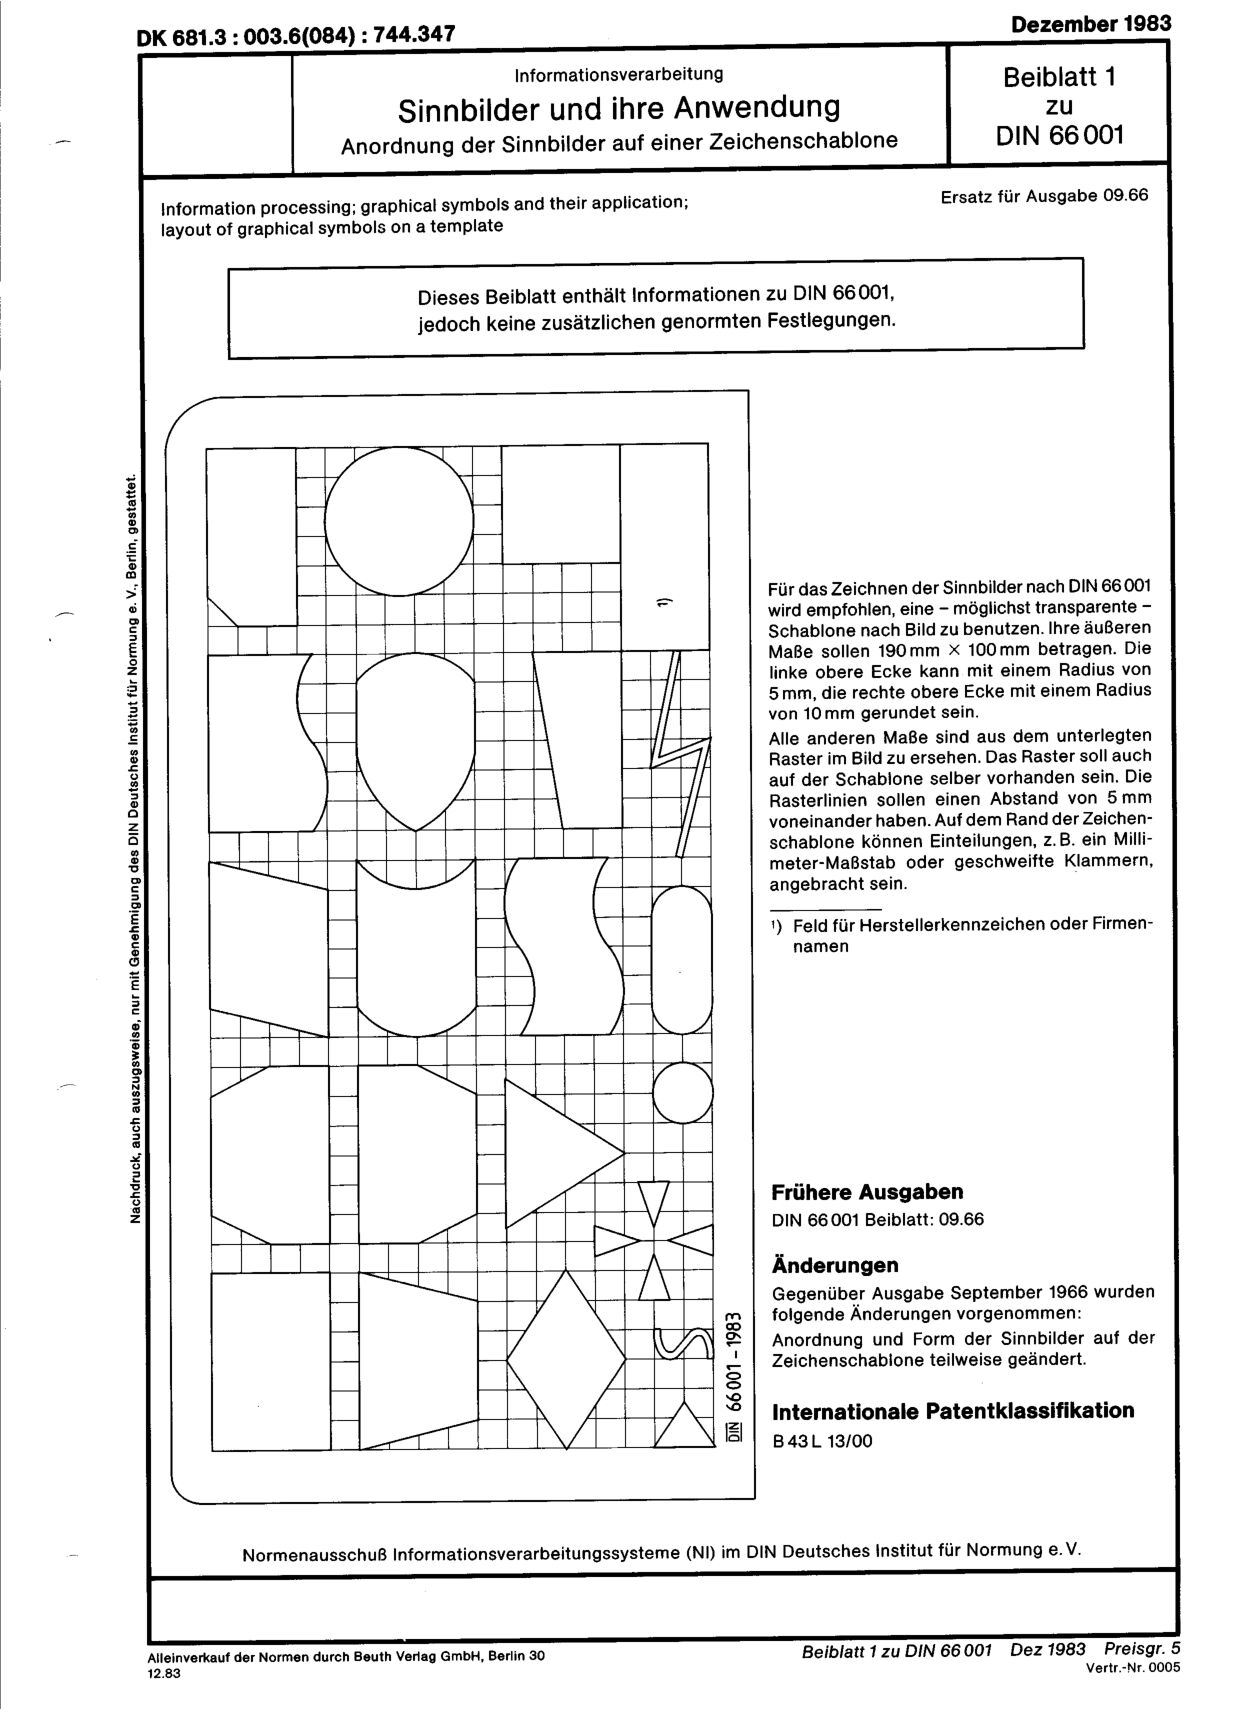 DIN 66001 Beiblatt 1:1983封面图